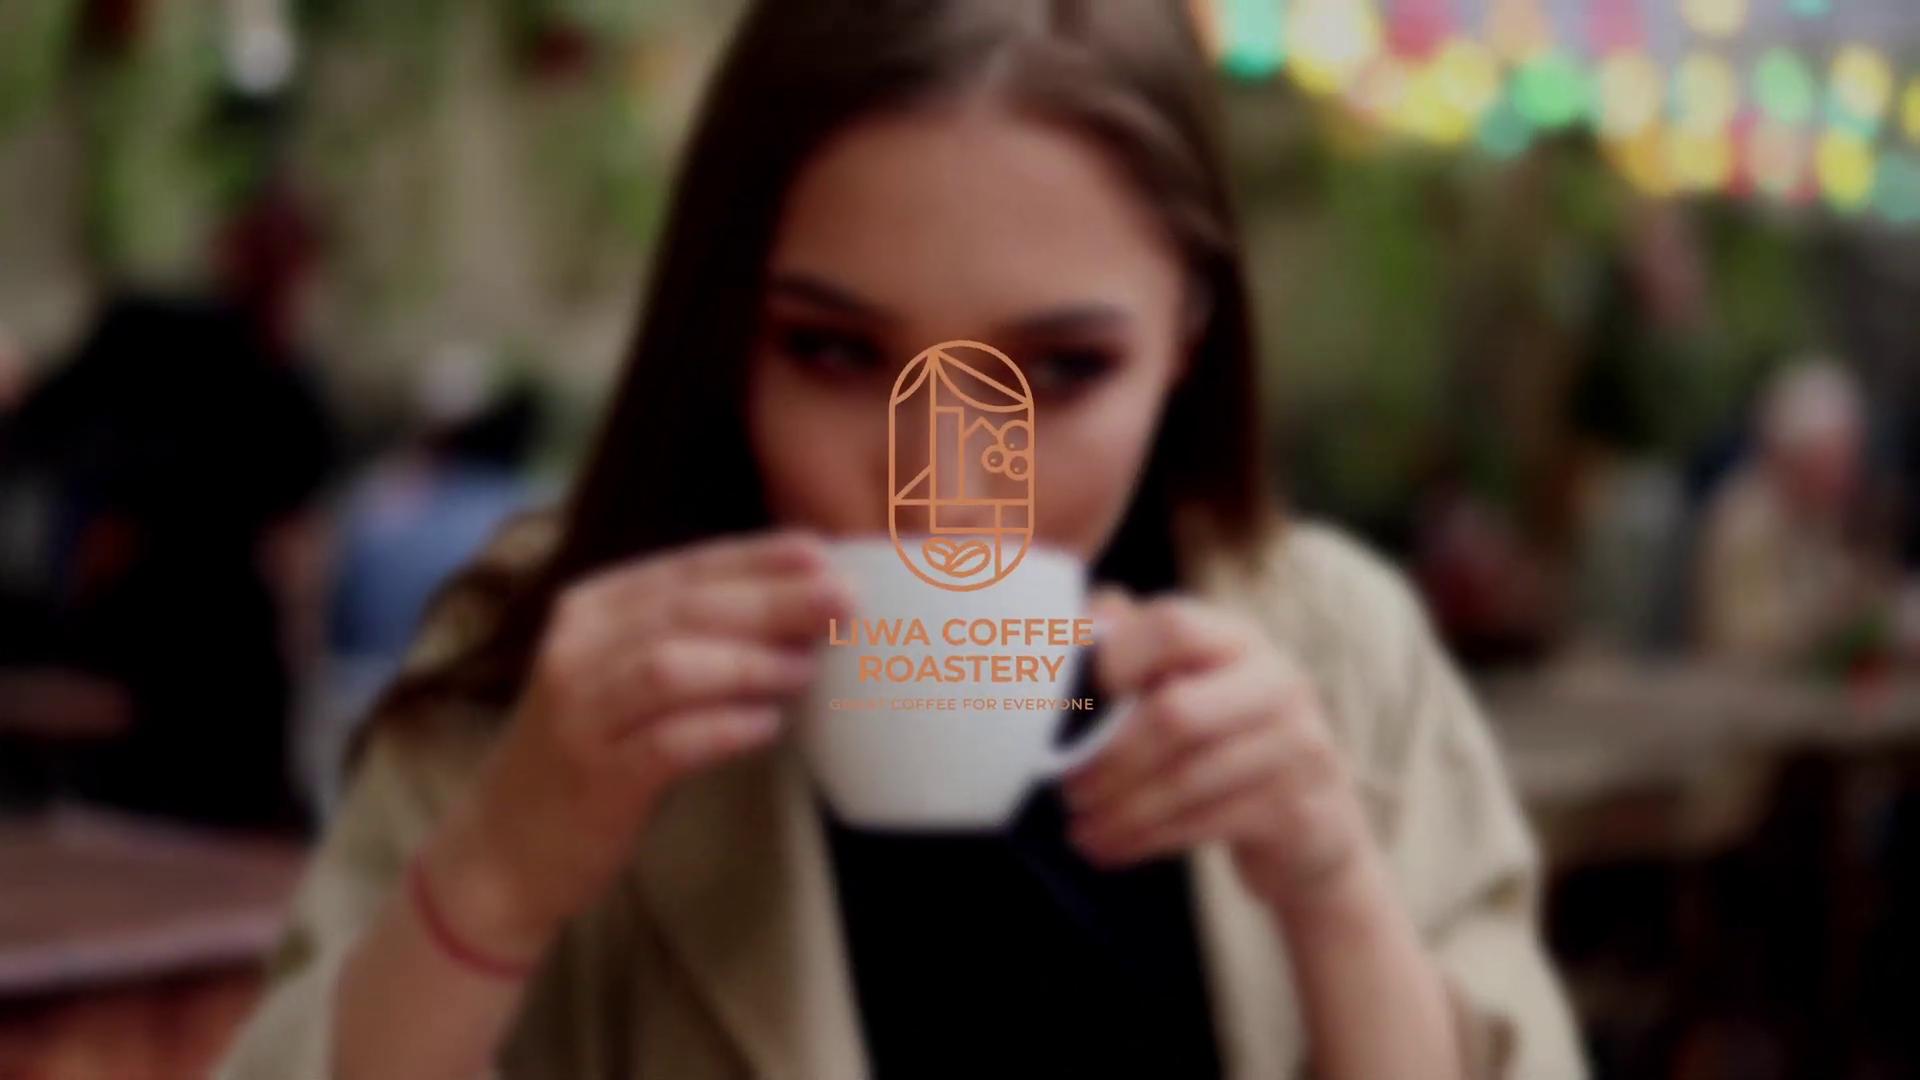 Load video: مصنع قهوة ليوا